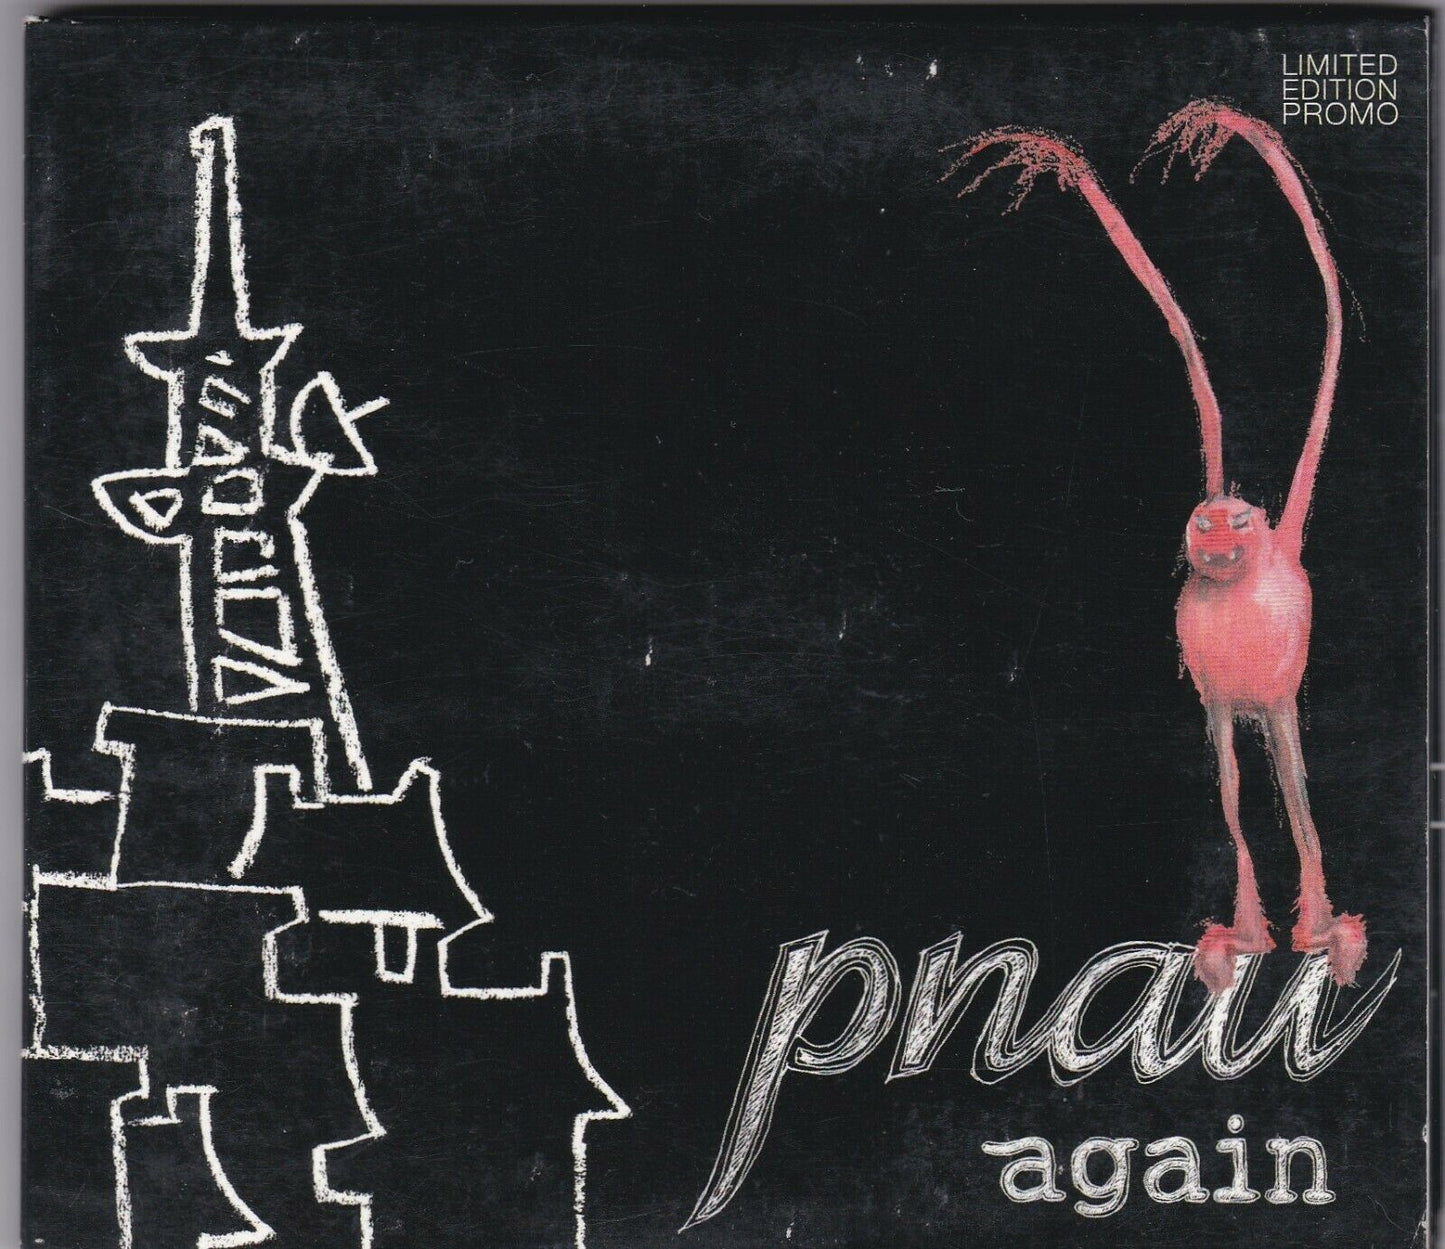 Pnau - Again - CD (Limited Edition Promo DJ Mix of Tracks from 'Again' PNAU02)